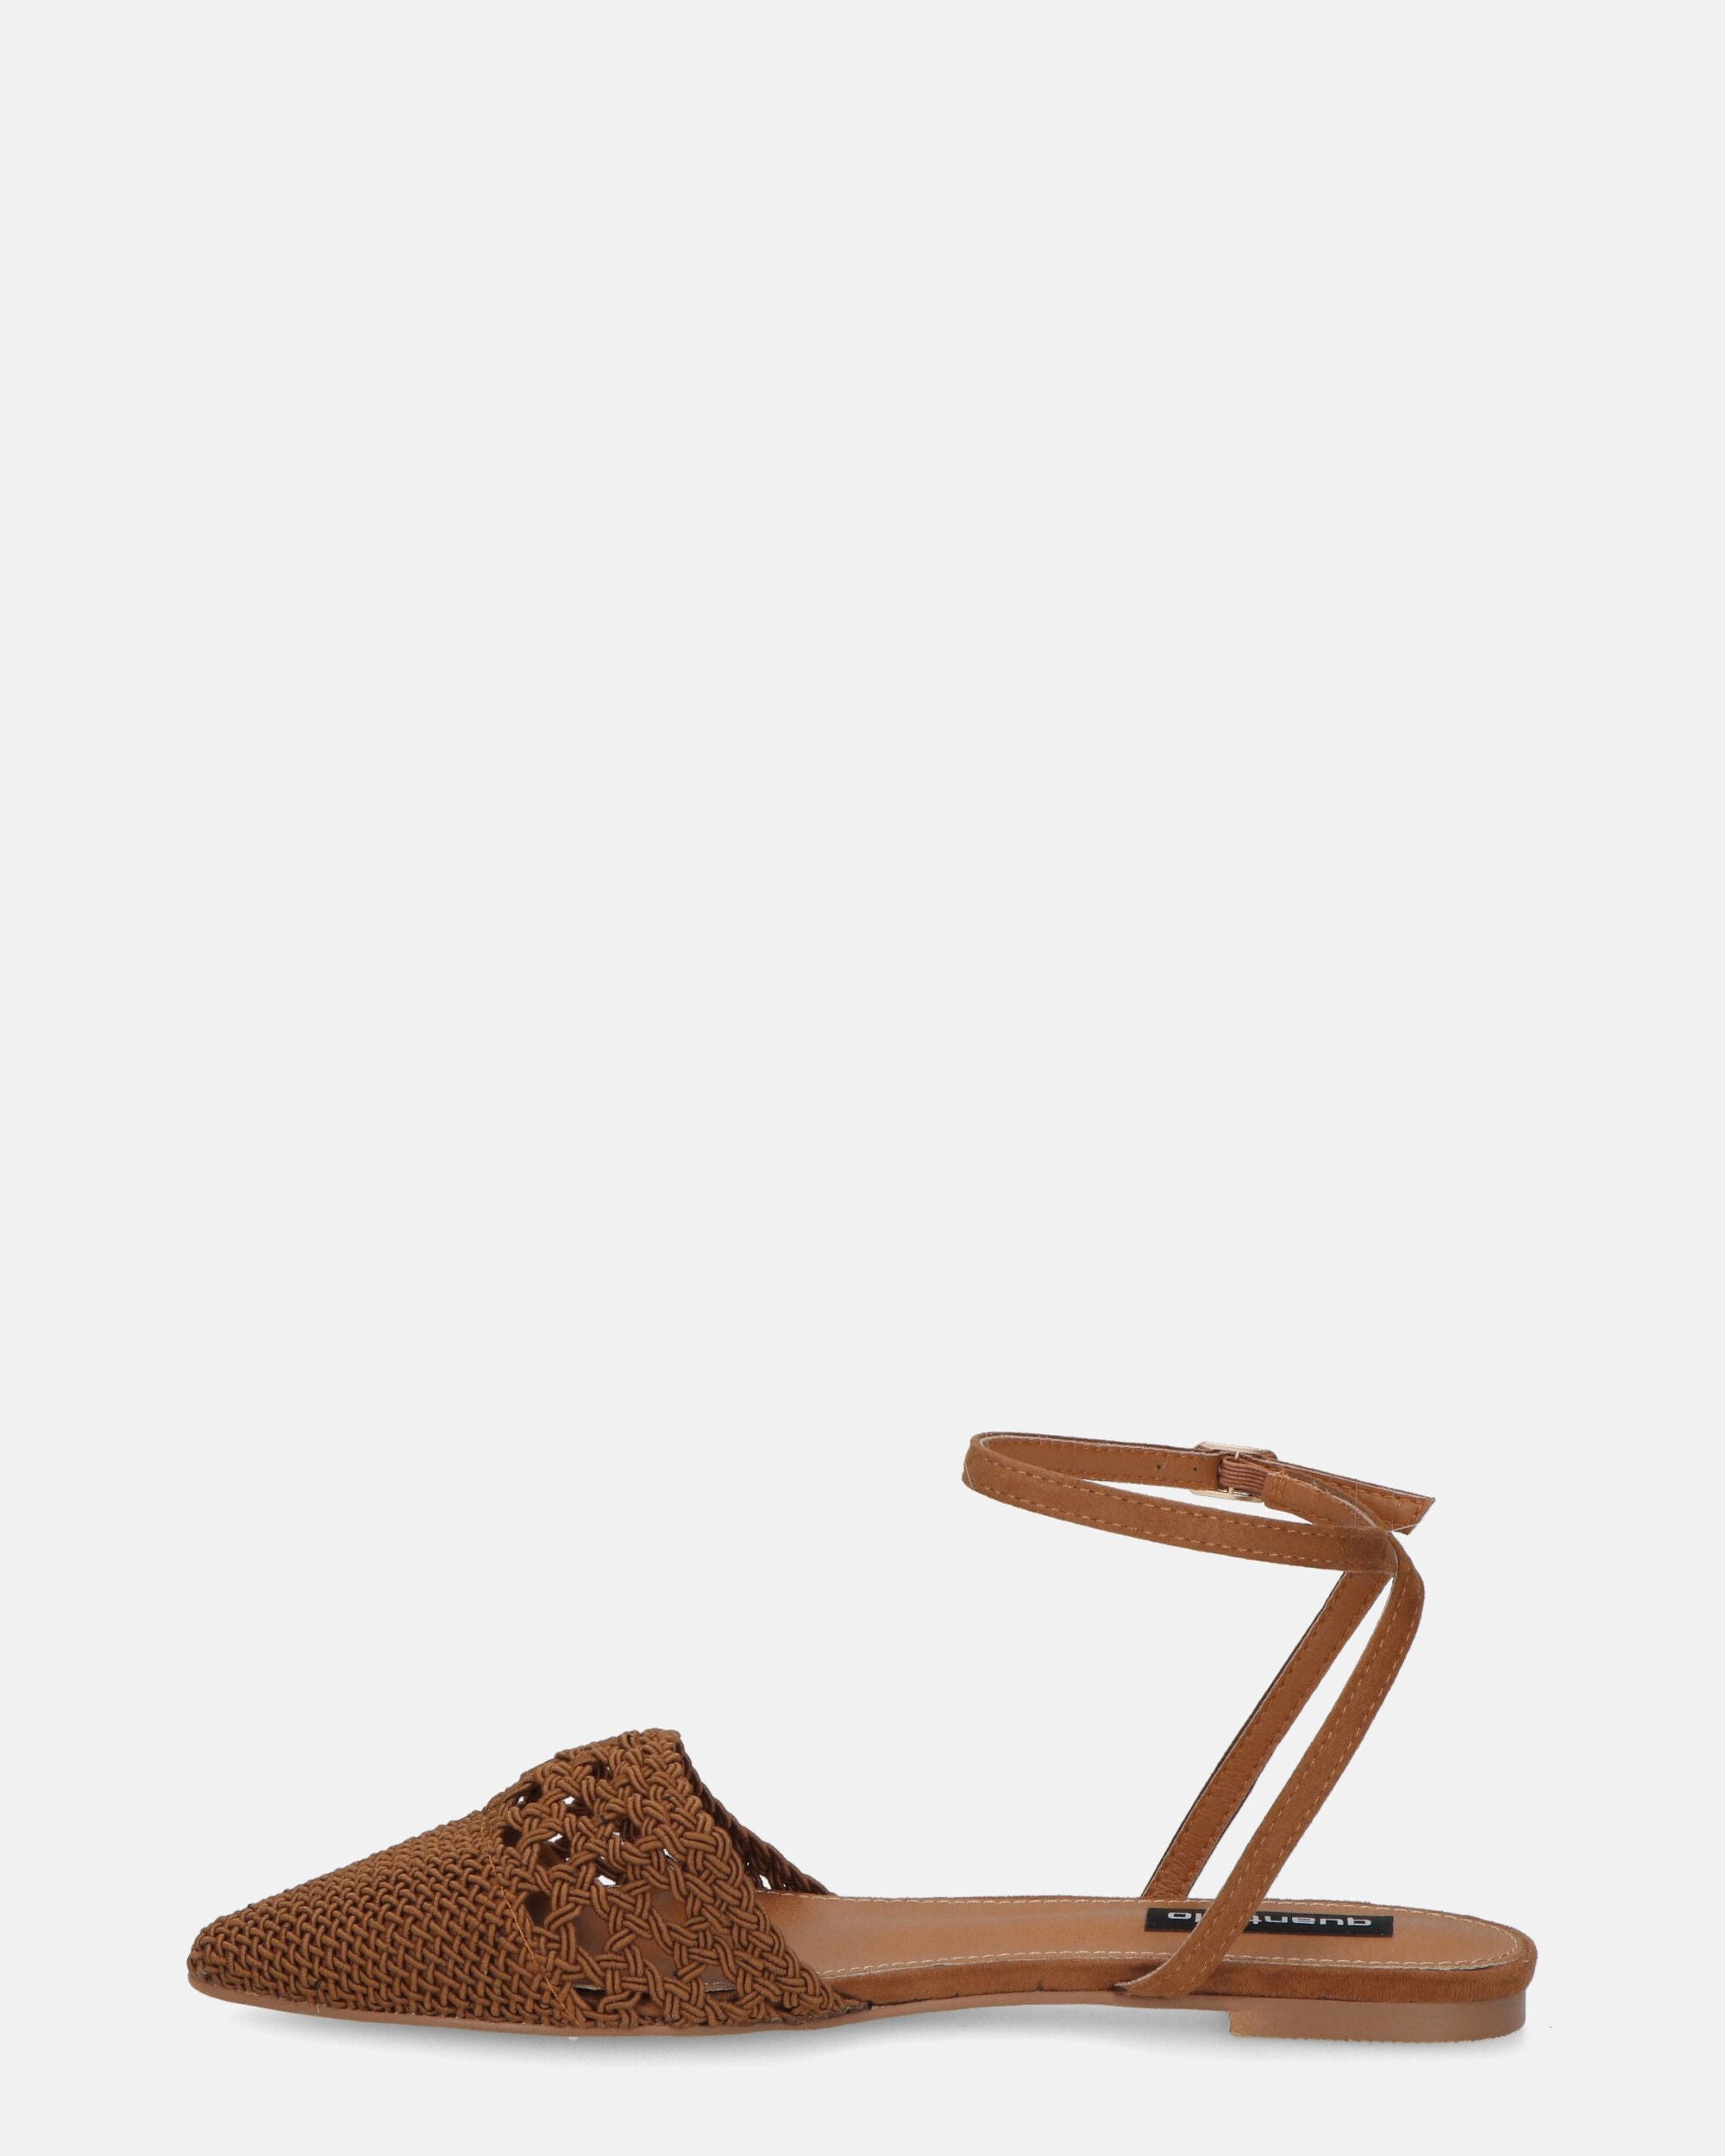 SWAMI - sandali bassi marroni con decorazione